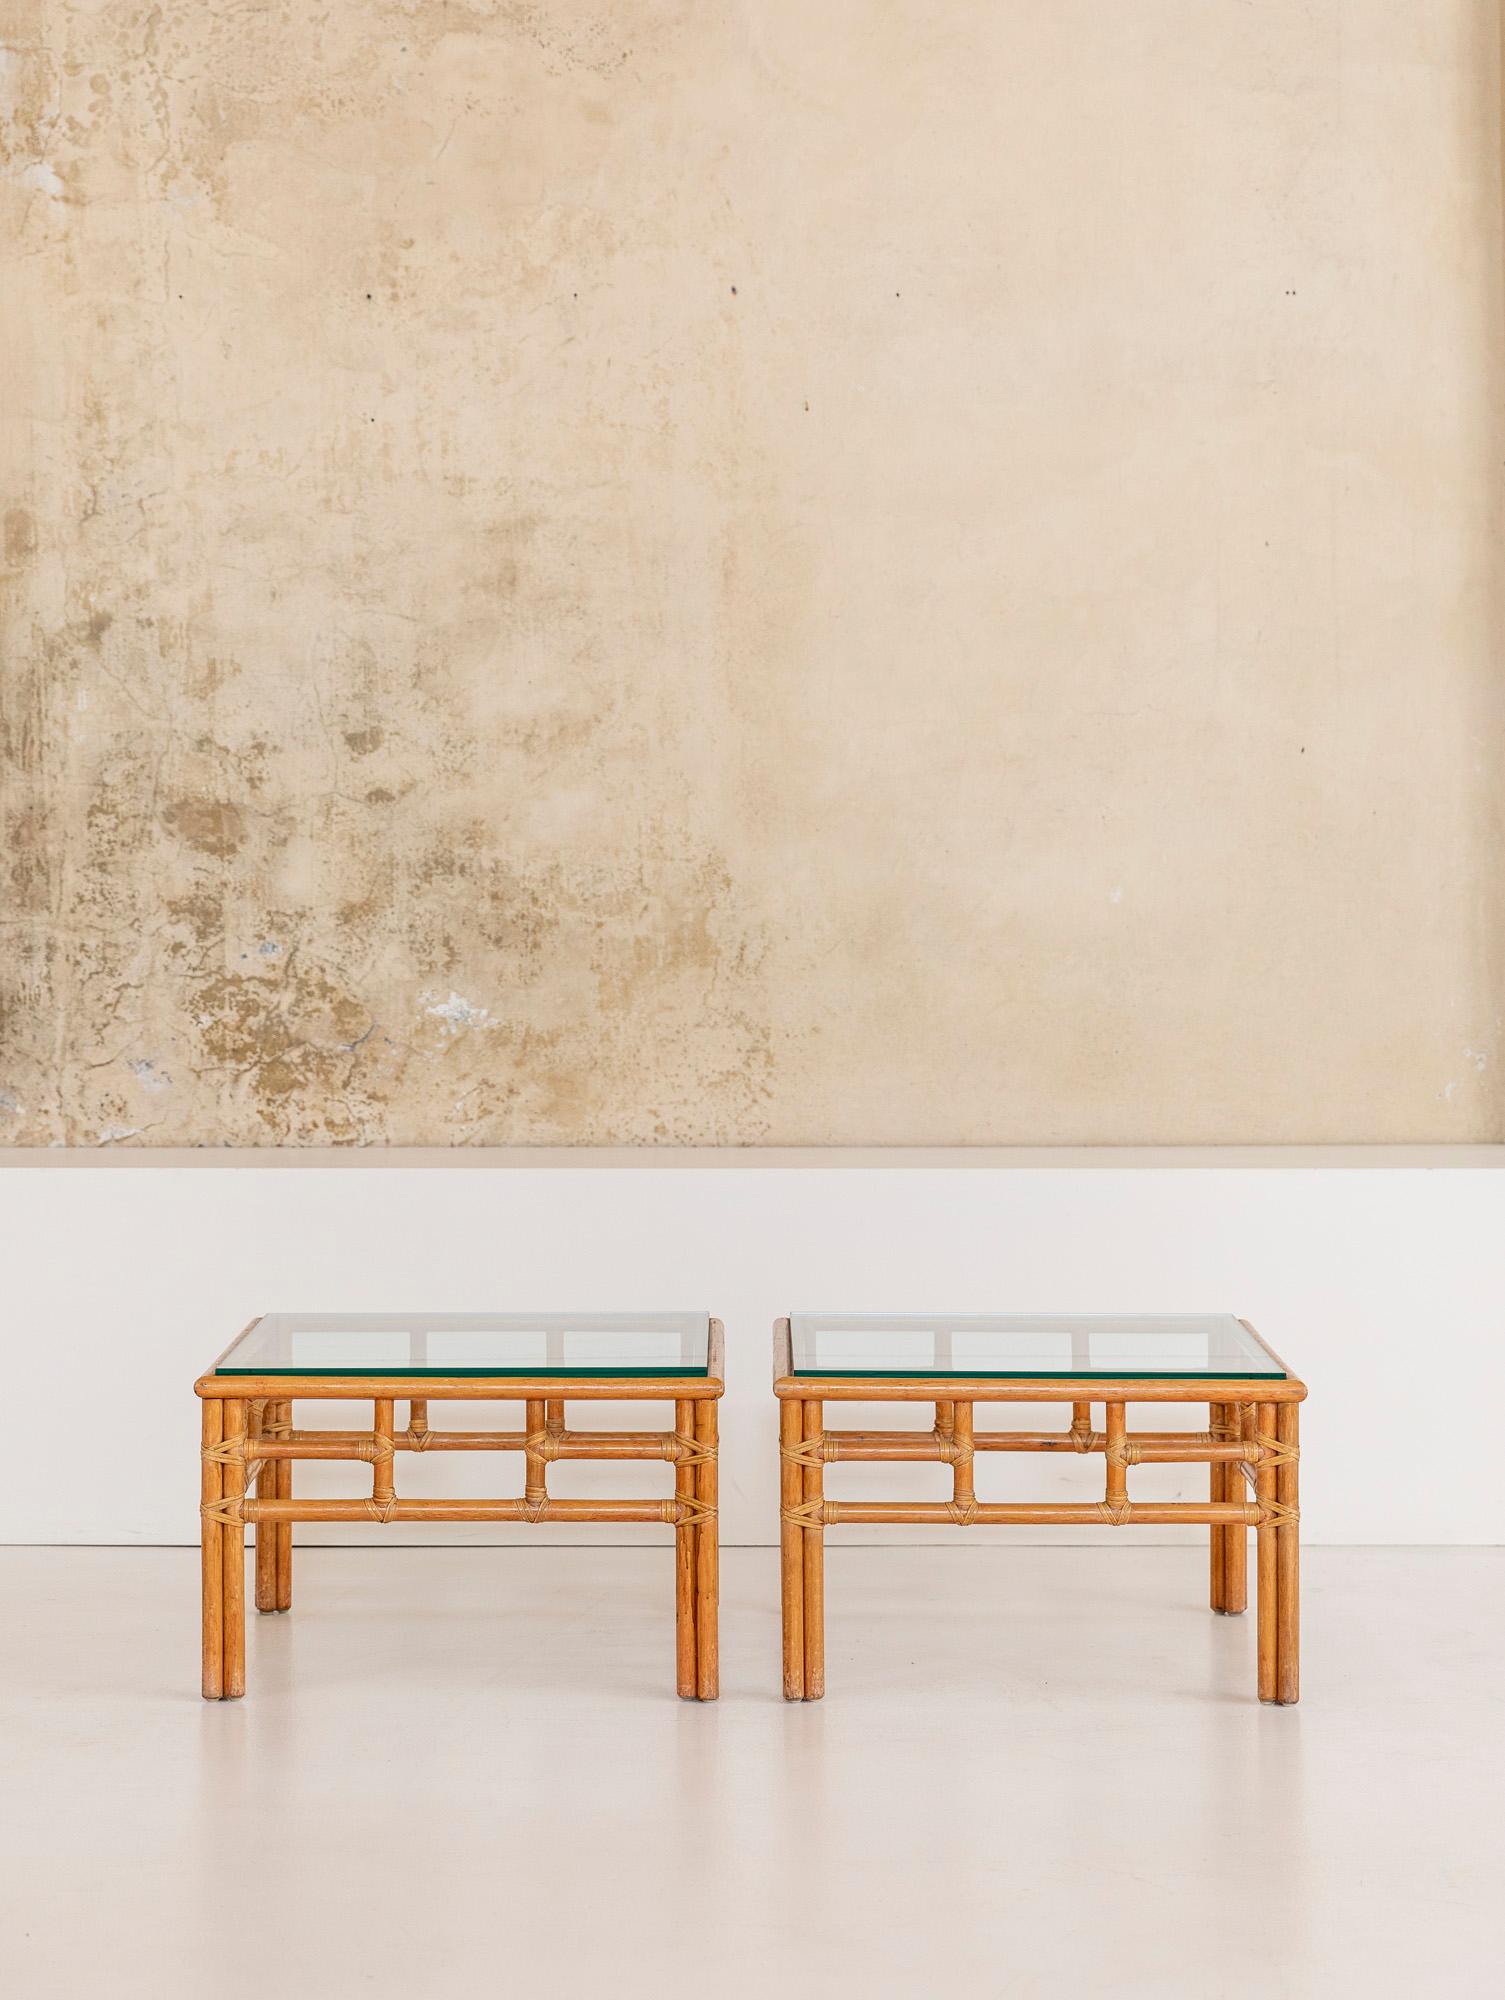 Superbe petite table basse en bambou avec plateau en verre d'origine, cette magnifique pièce a été dessinée par Lyda Levi vers 1970.
Ces tables peuvent être assorties à l'ensemble comprenant deux canapés, deux fauteuils avec leur pouf, un ensemble